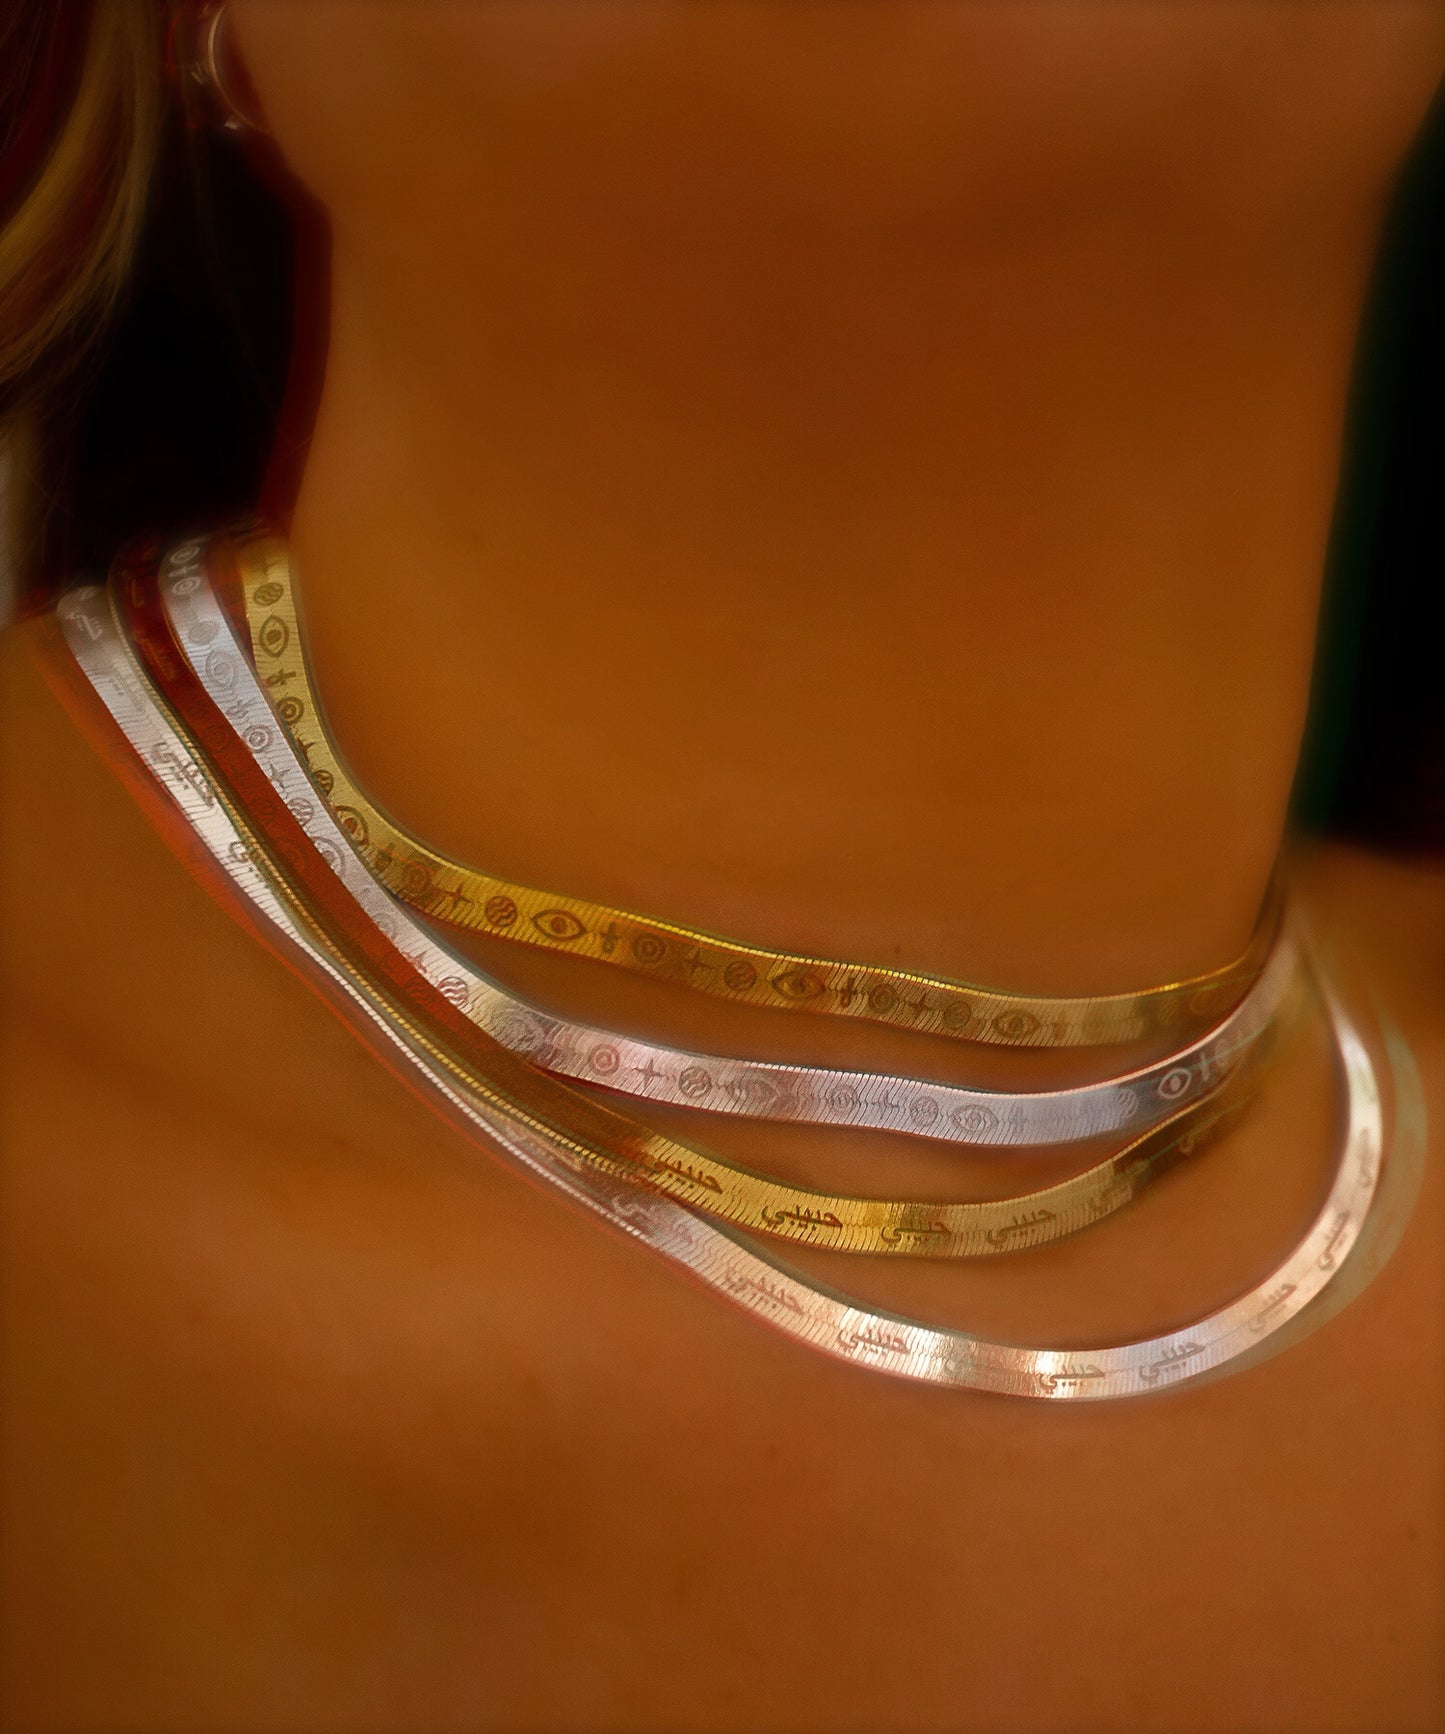 Habibi Herringbone Chain Necklace